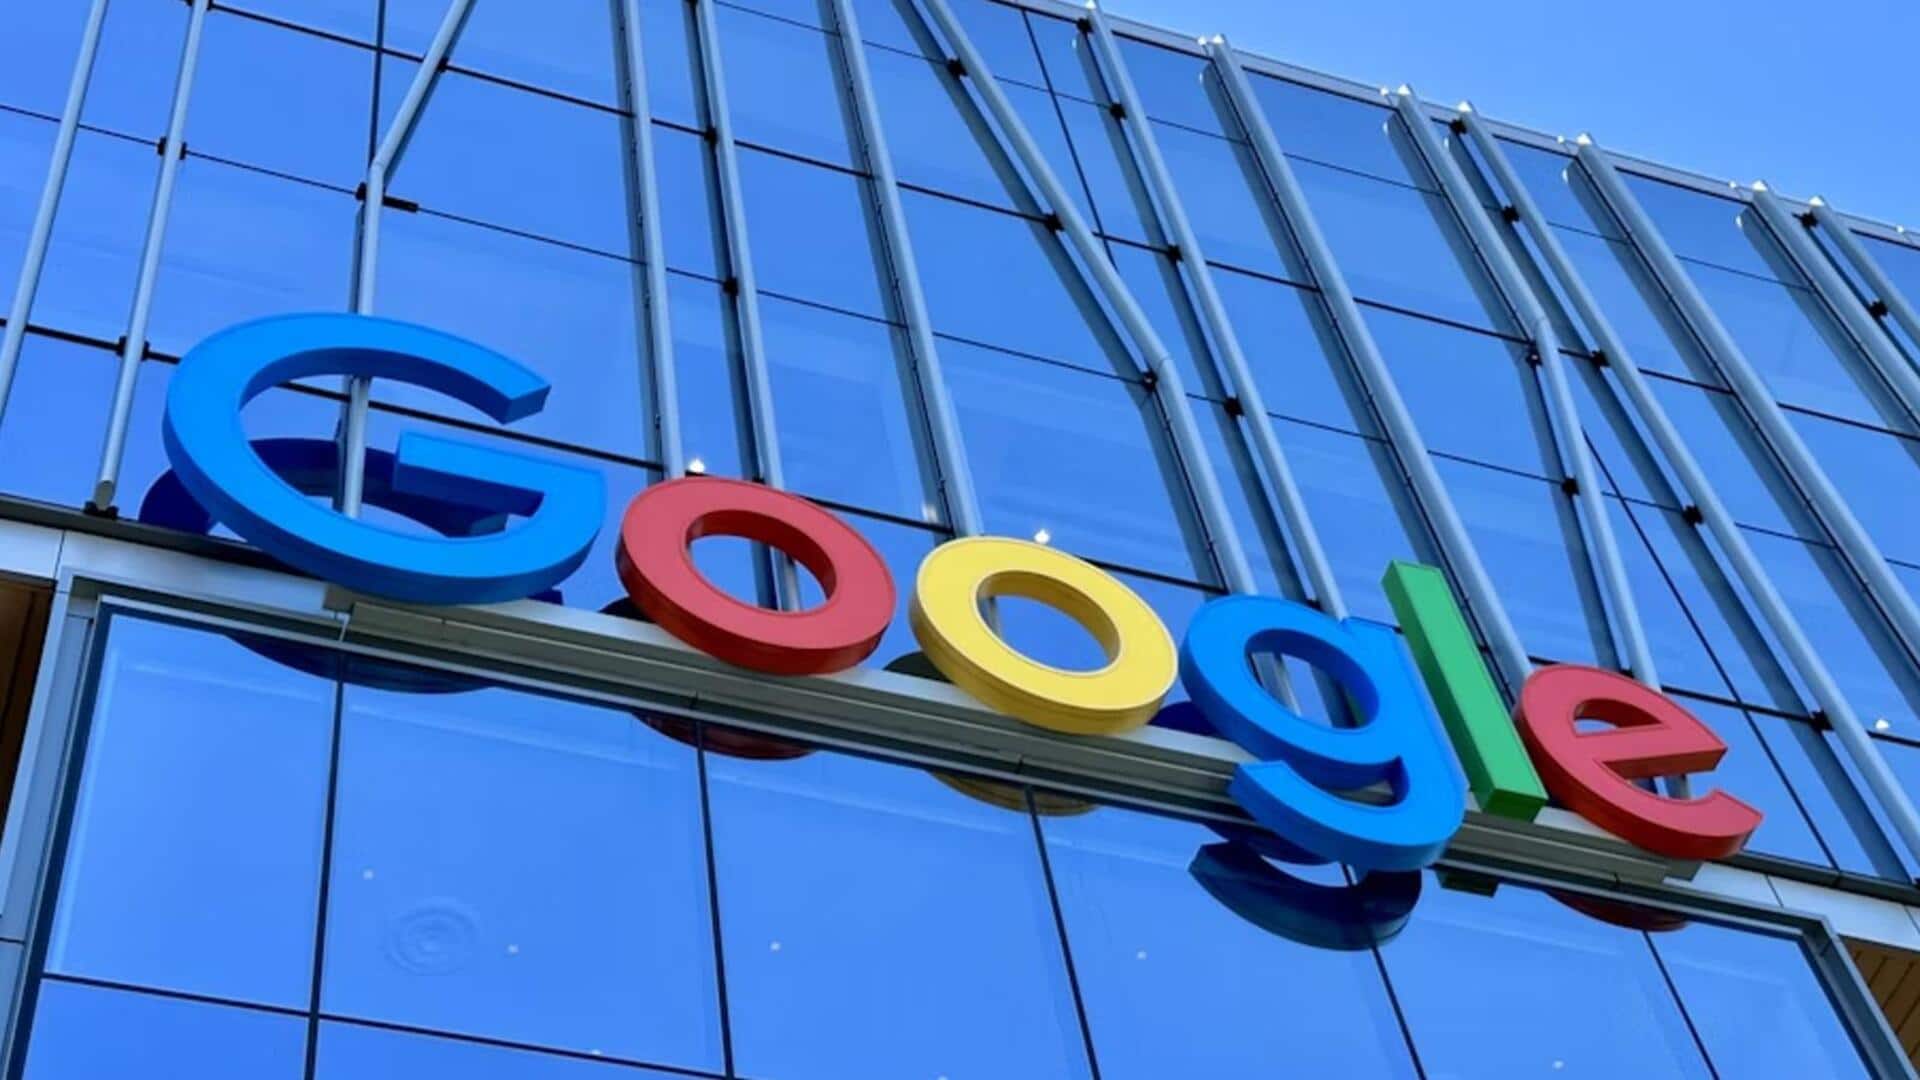 गूगल ने की छंटनी की घोषणा, क्लाउड यूनिट के सैकड़ों कर्मचारियों की गई नौकरी 